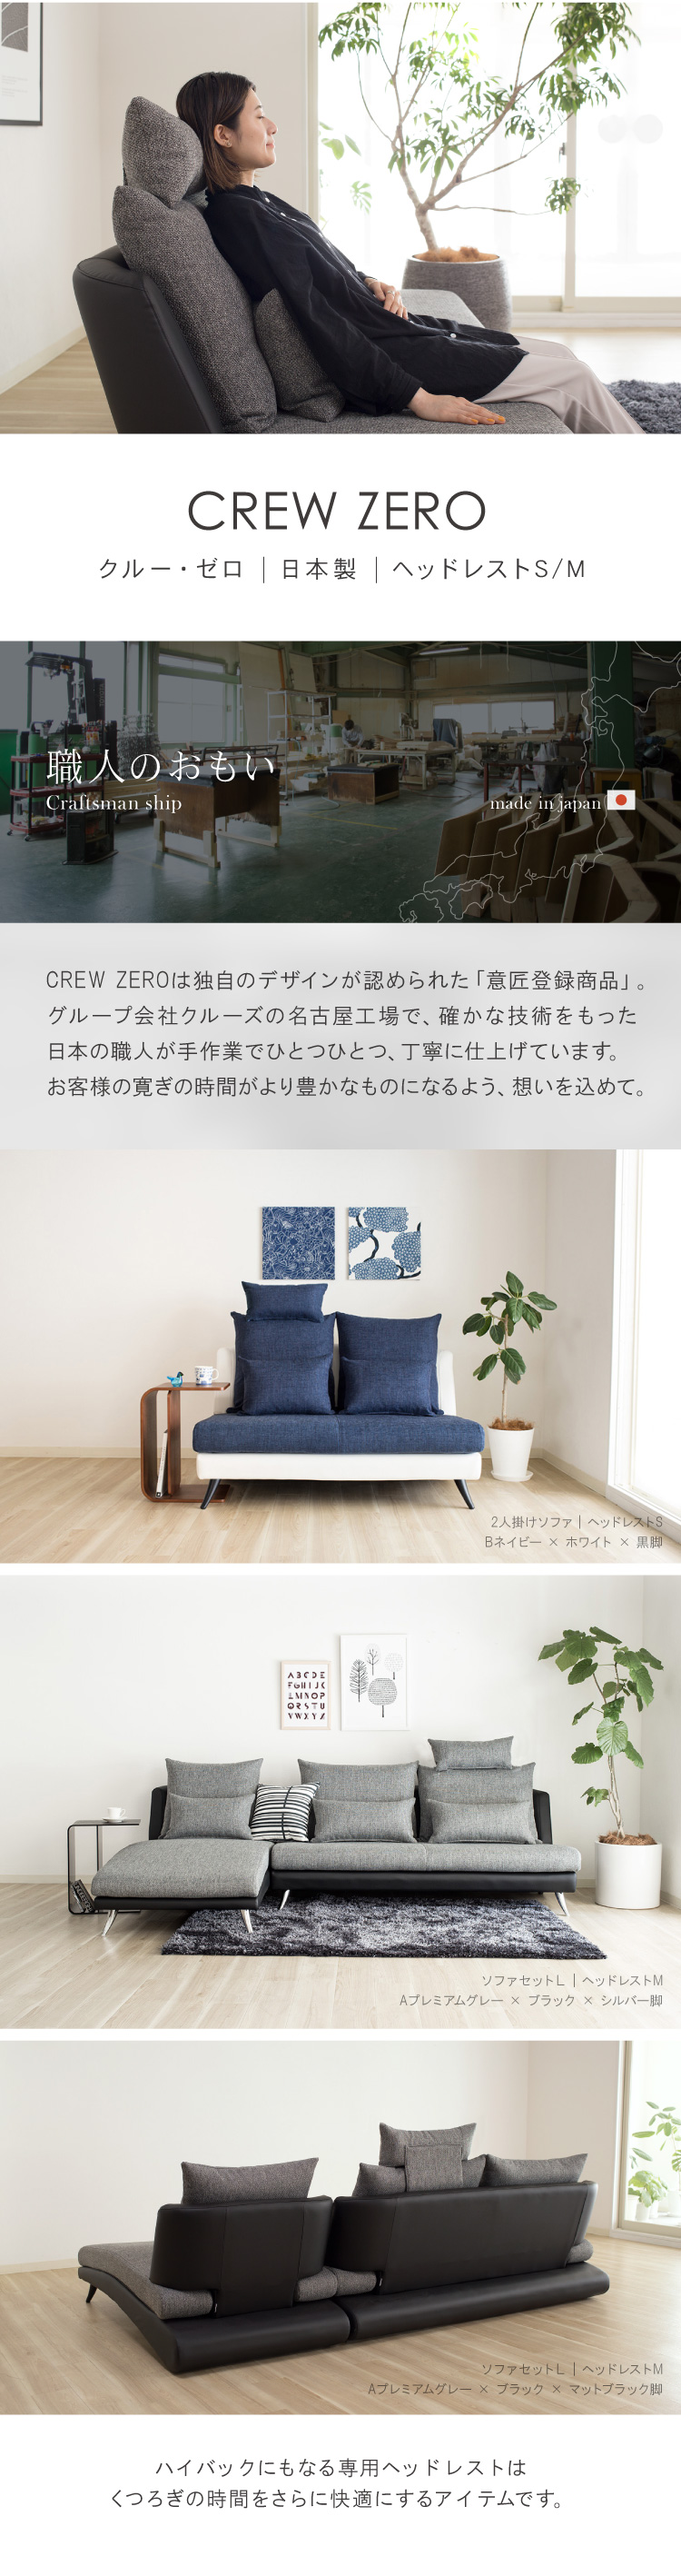 クルーゼロ日本製ヘッドレスト